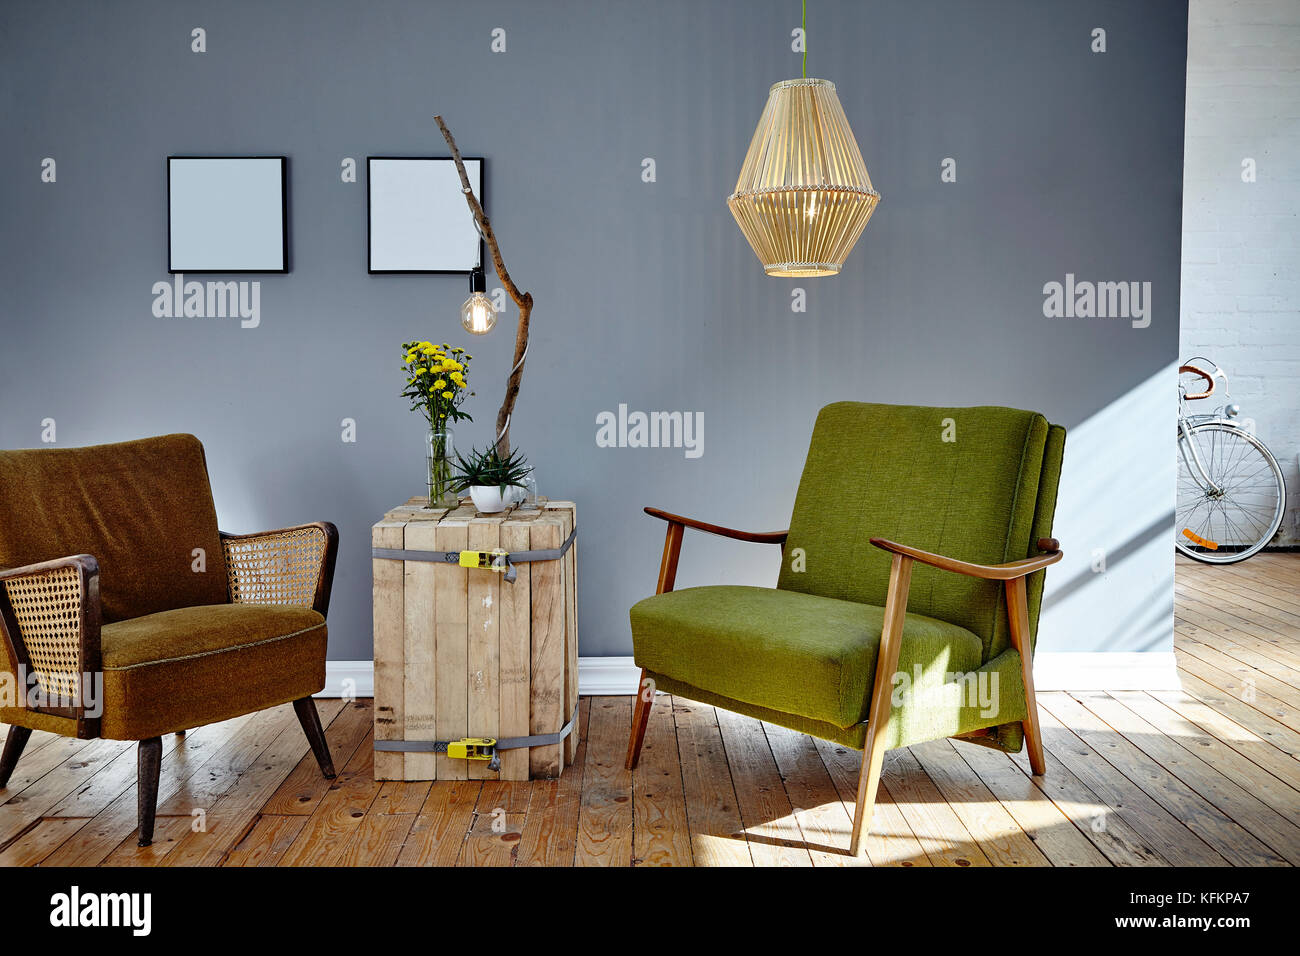 Deux chaises design rétro dans la salle de séjour ensoleillée ambiance loft berlin Banque D'Images